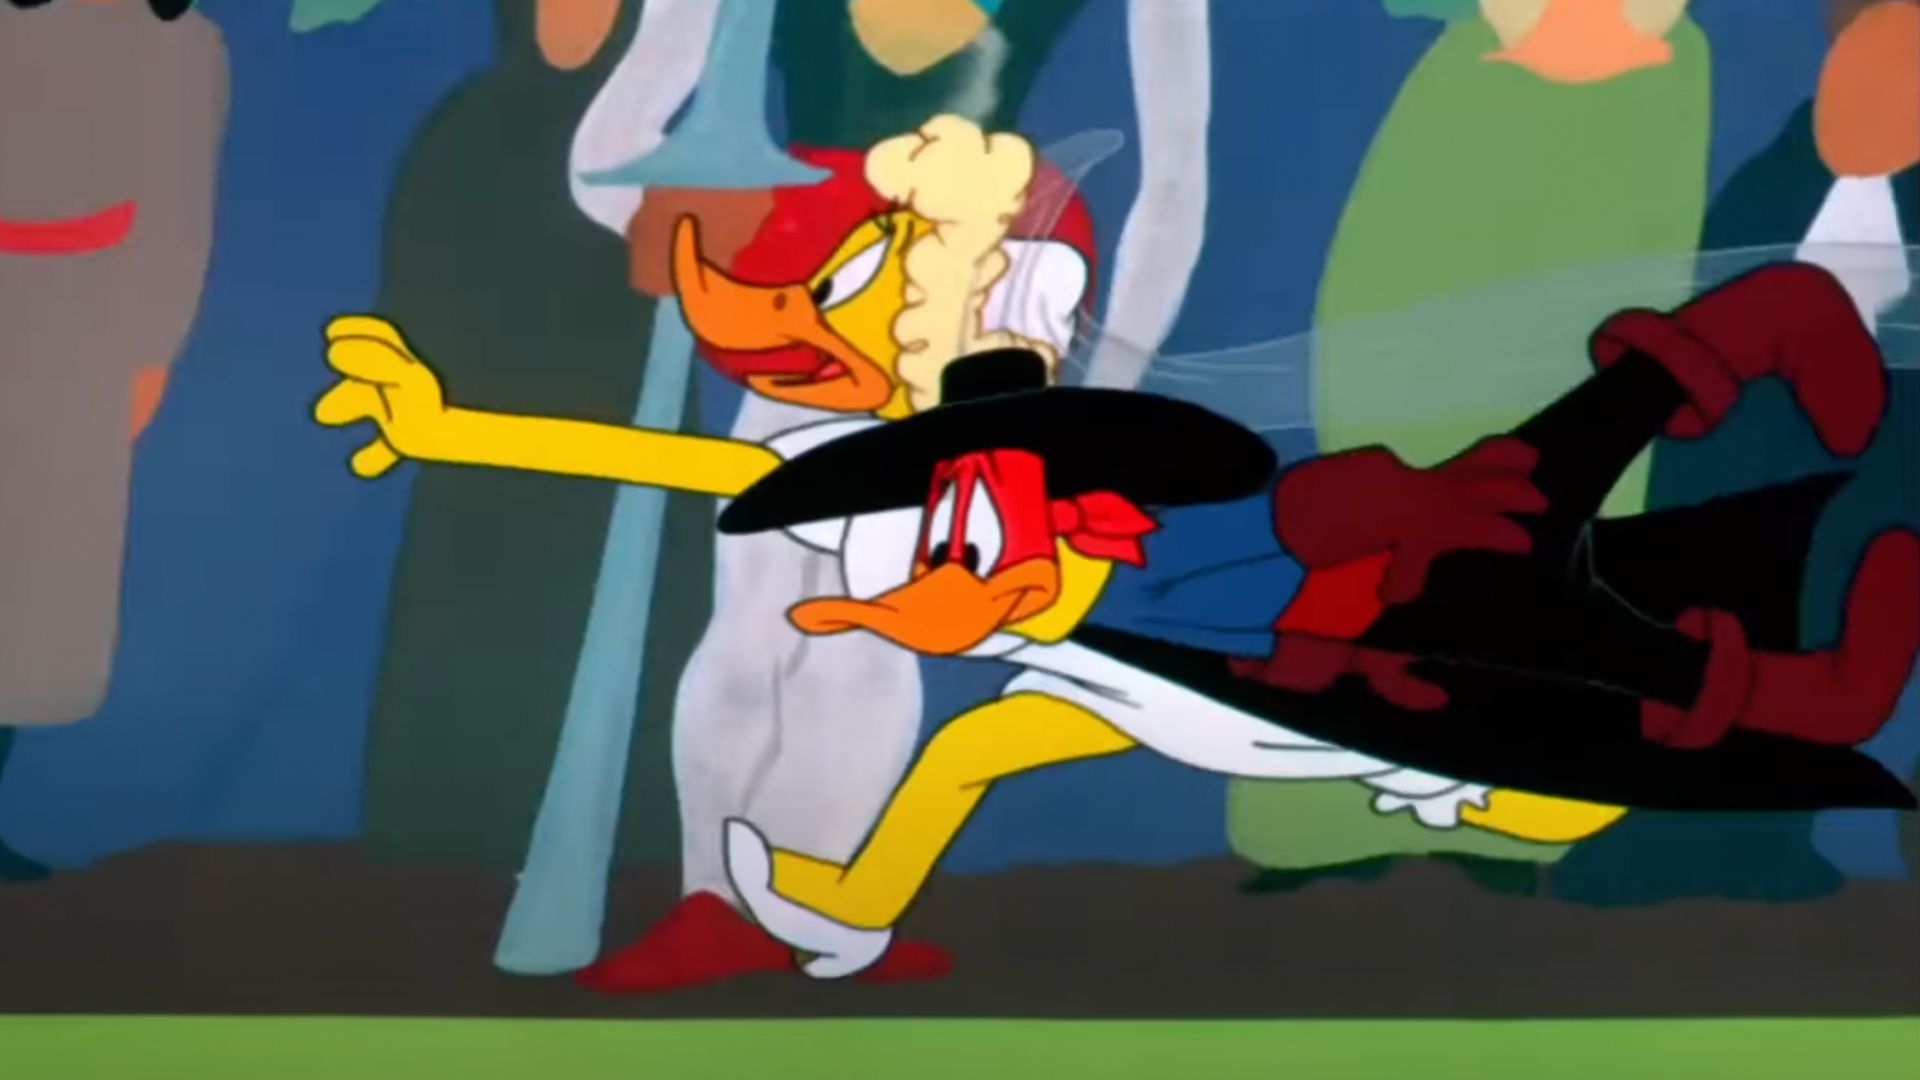 10 персонажей Looney Tunes, о которых вы, вероятно, никогда не слышали